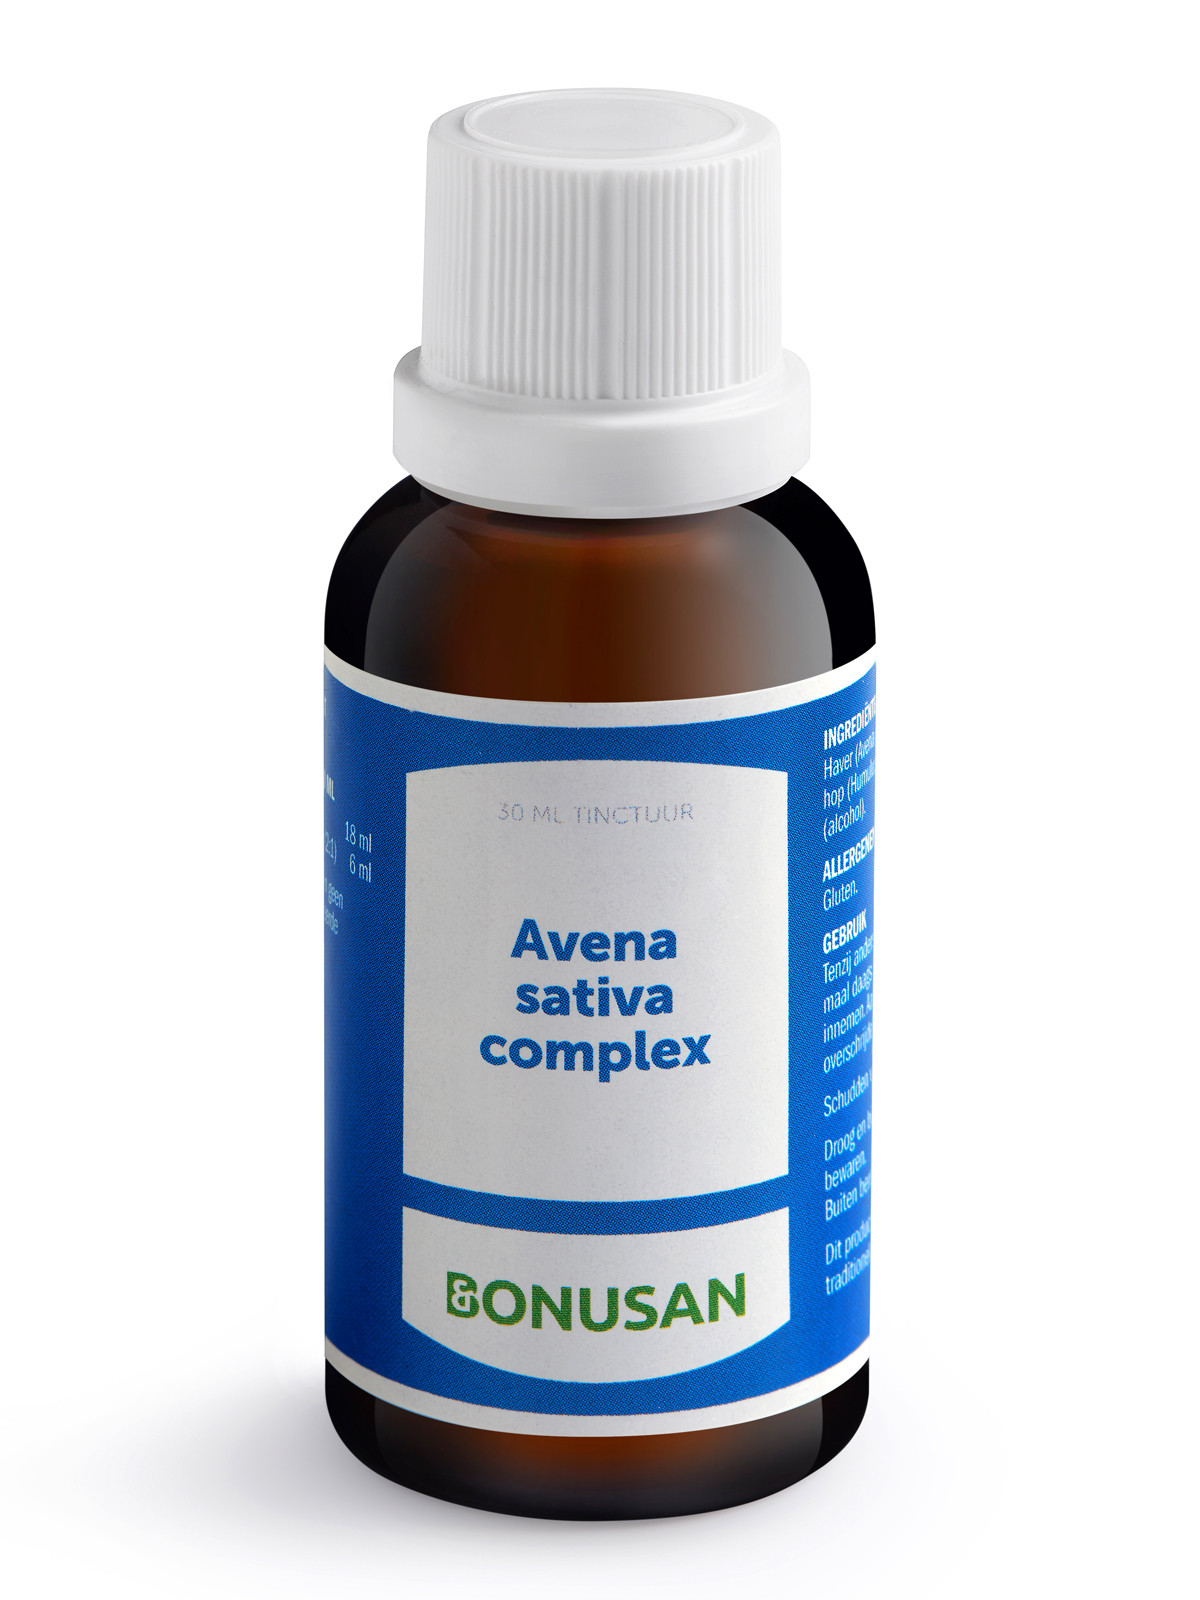 Bonusan - Avena sativa complex tinctuur